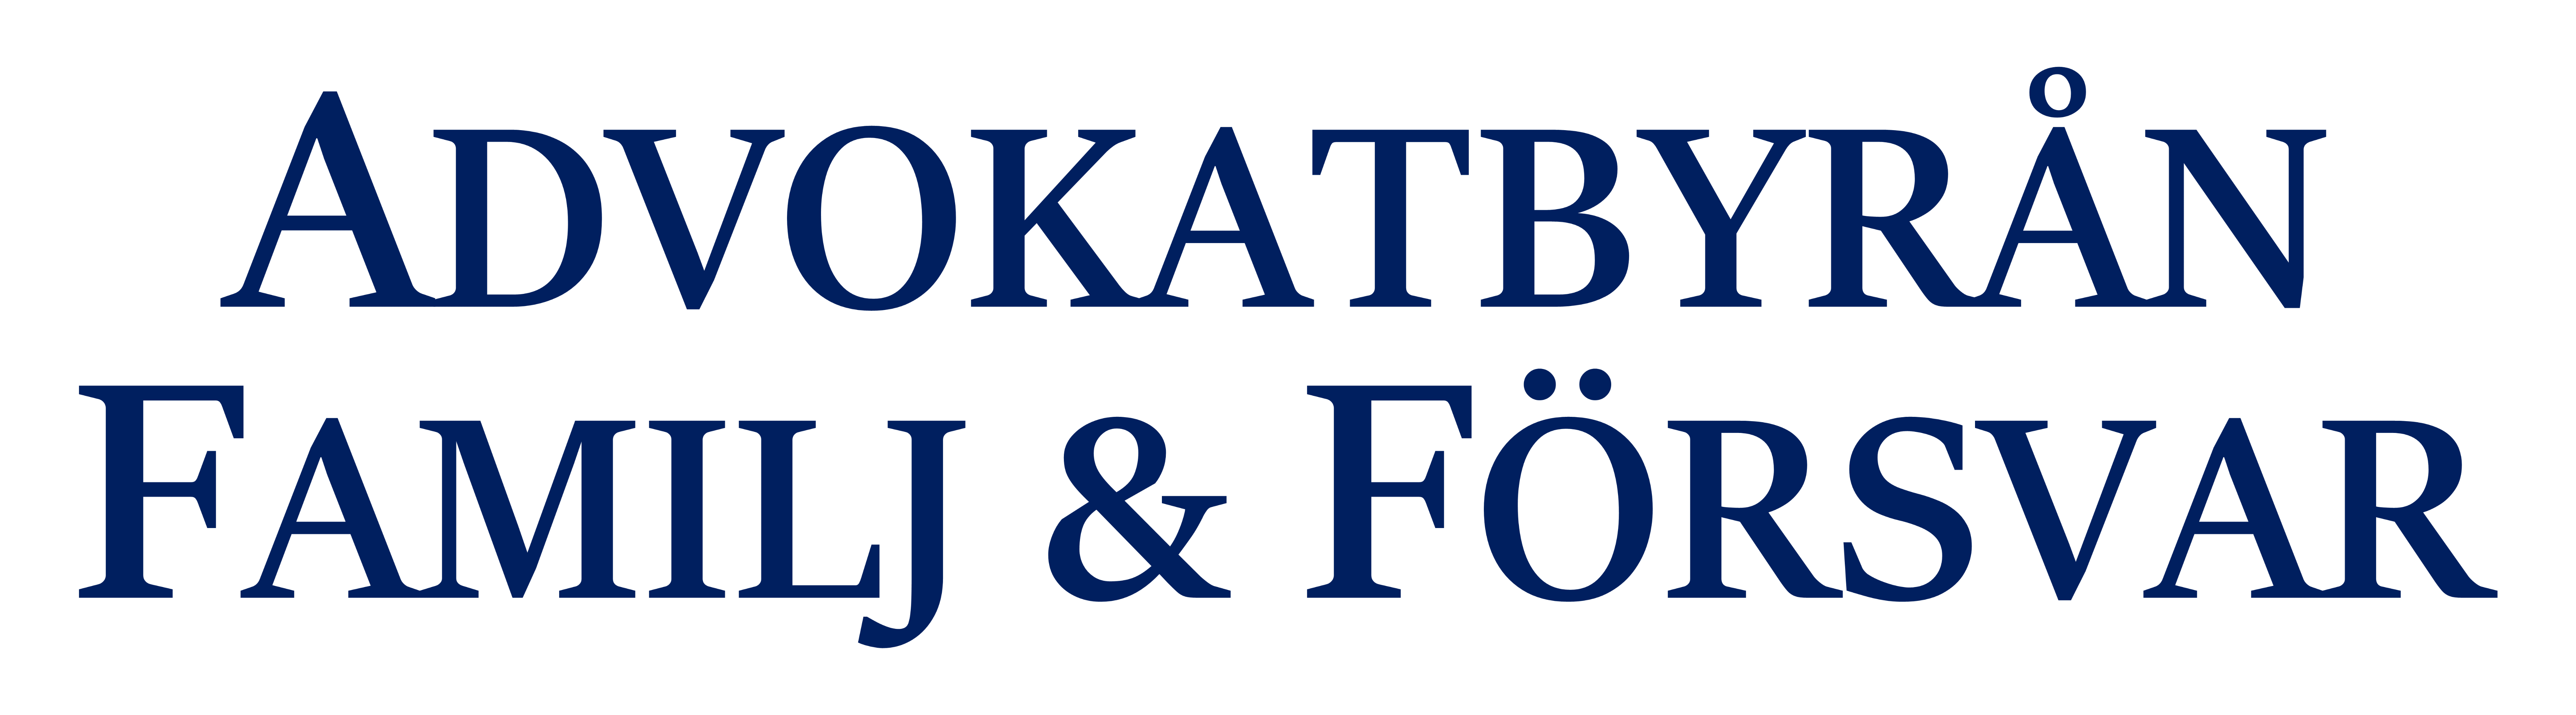 Advokat familj försvar logotyp blå text